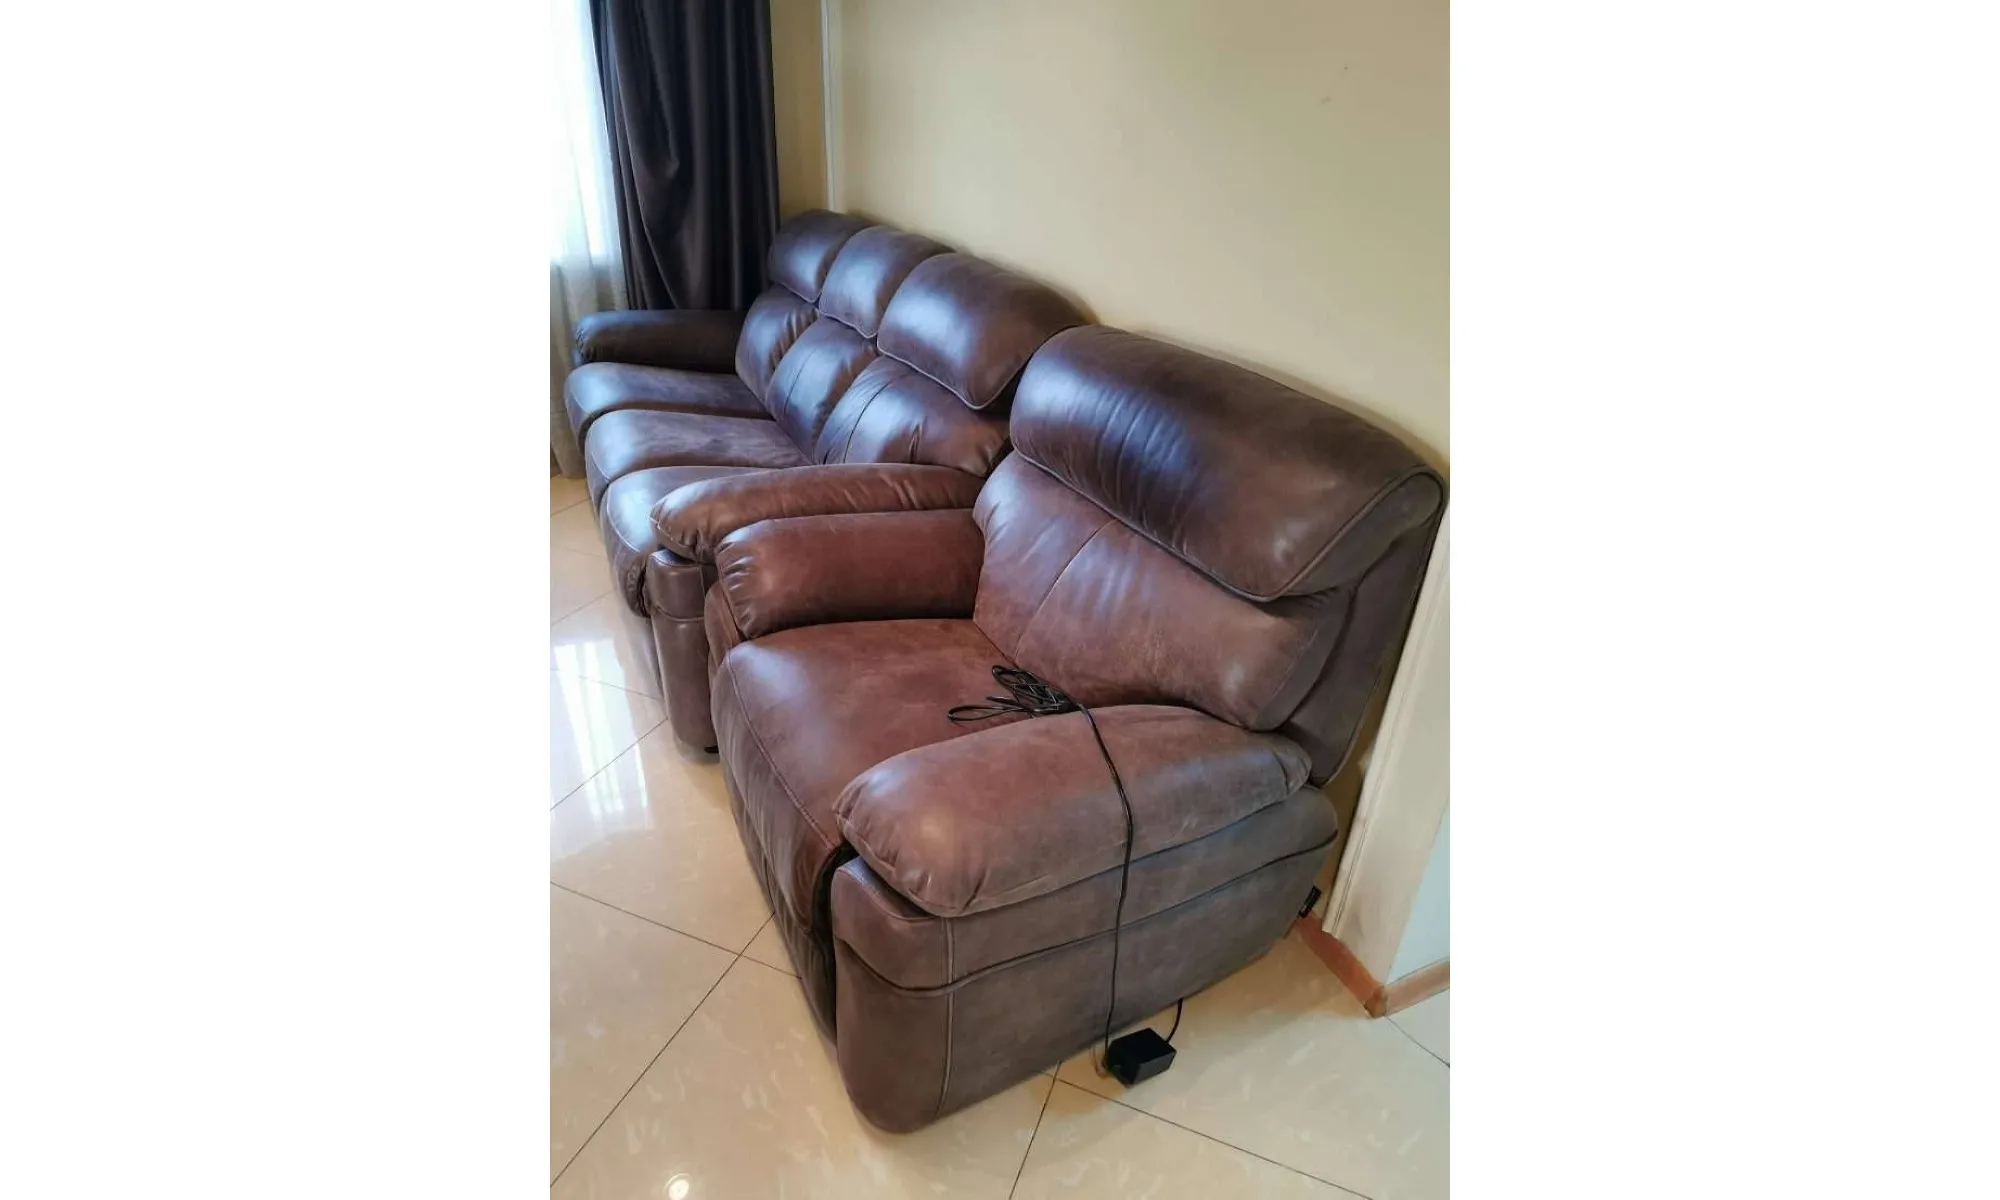 Комплект диван + кресло Chinno Cilini Майами 3p+1э.р от CINNO CILLINI изРоссии - купить в сети мебельных салонов Юнион